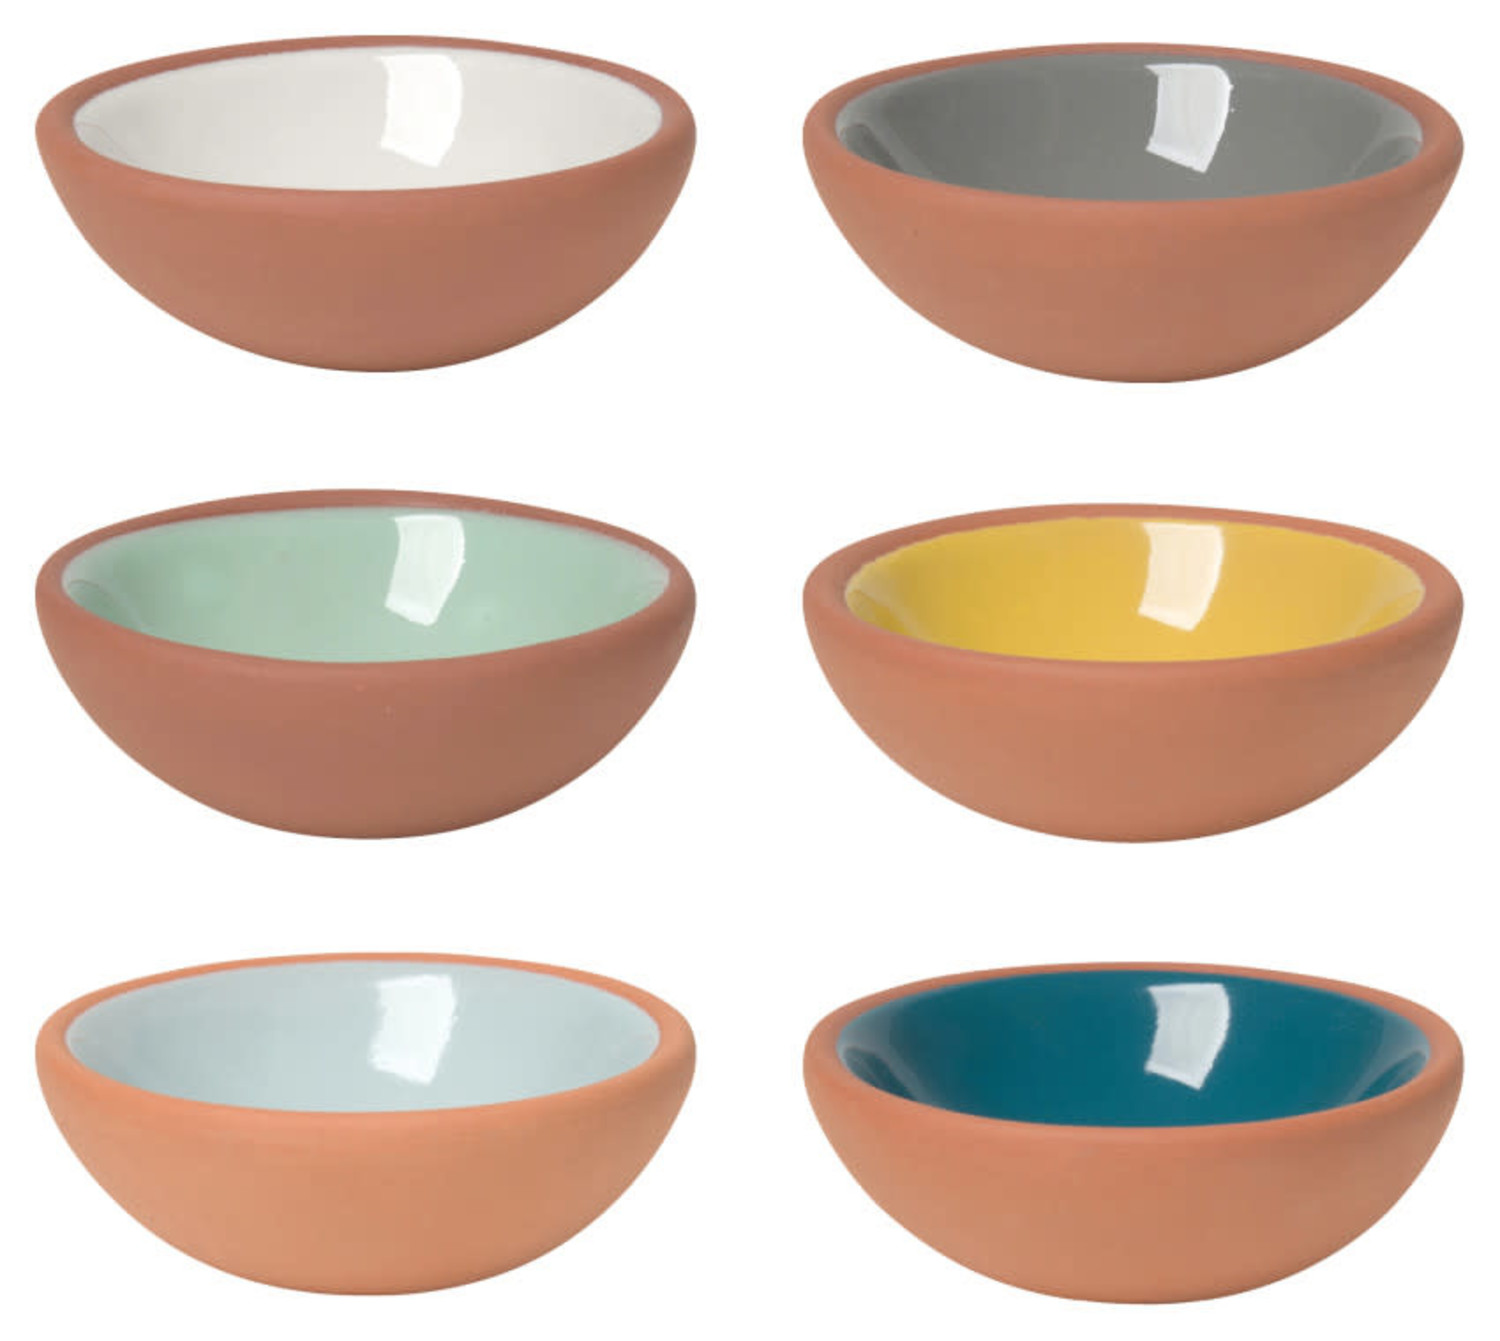 https://cdn.shoplightspeed.com/shops/633447/files/19734101/1500x4000x3/terracotta-pinch-bowls-set-of-6.jpg